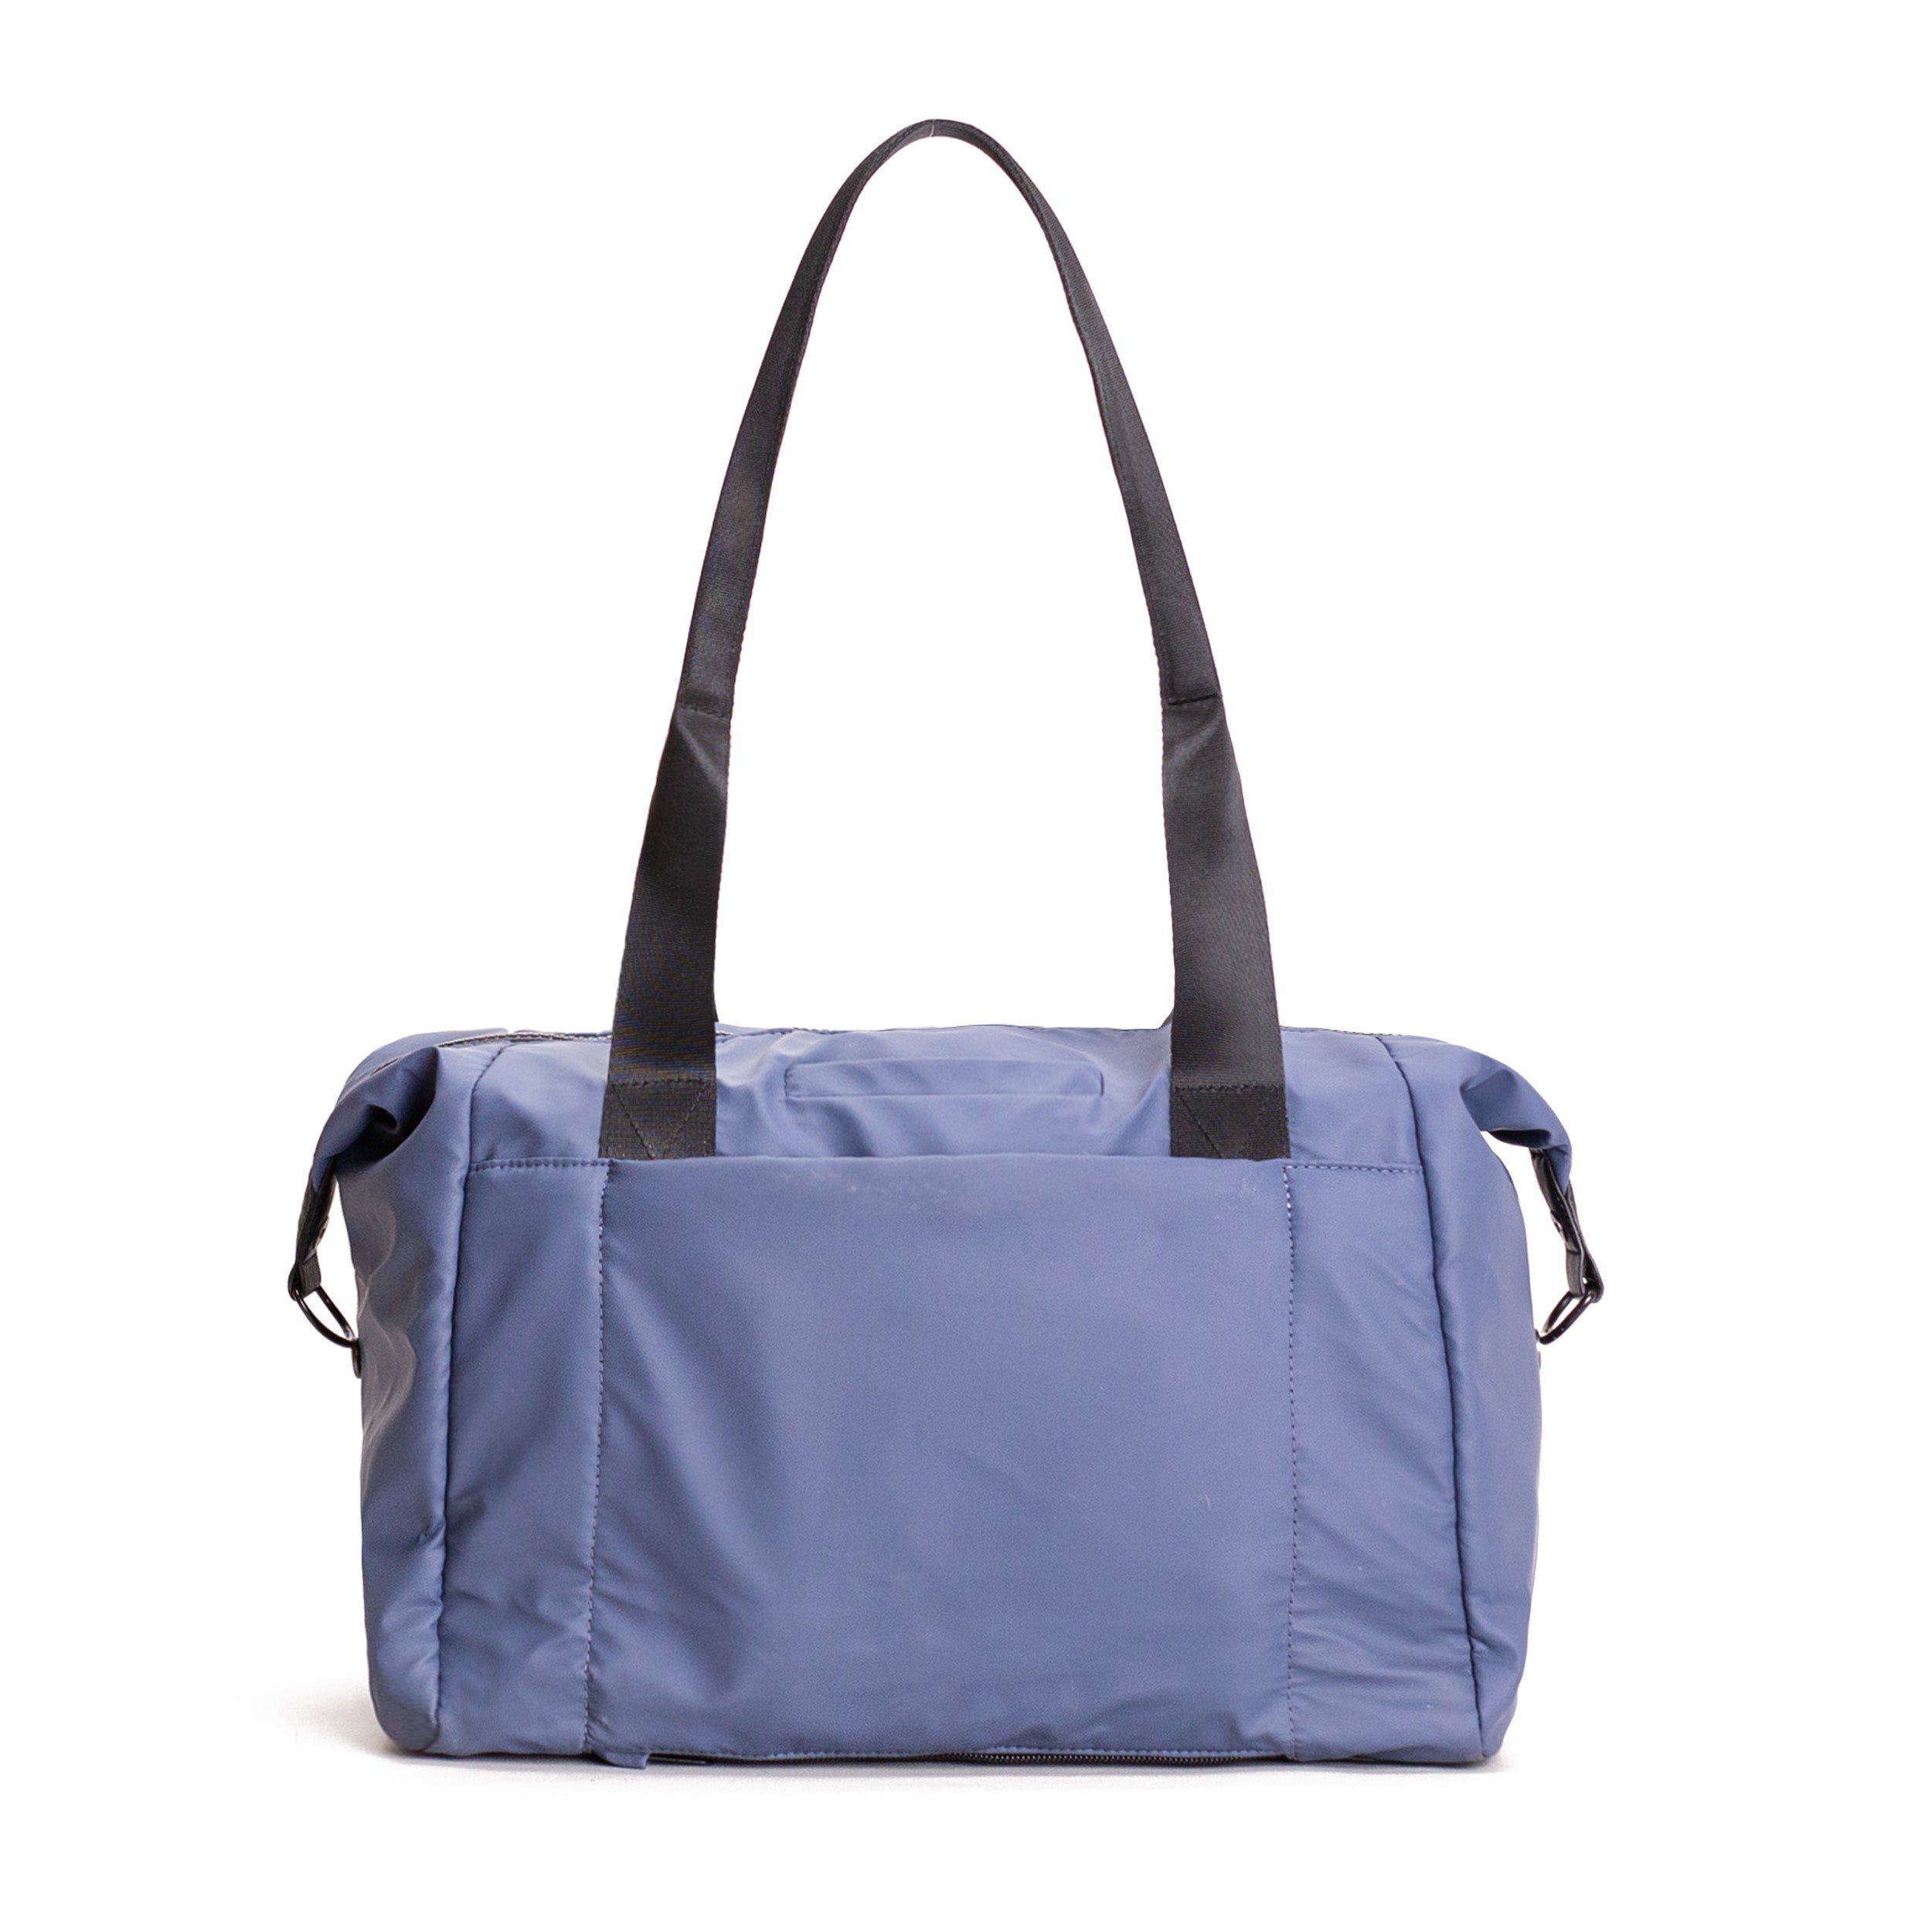 Purse Organization Unlocked! : r/handbags